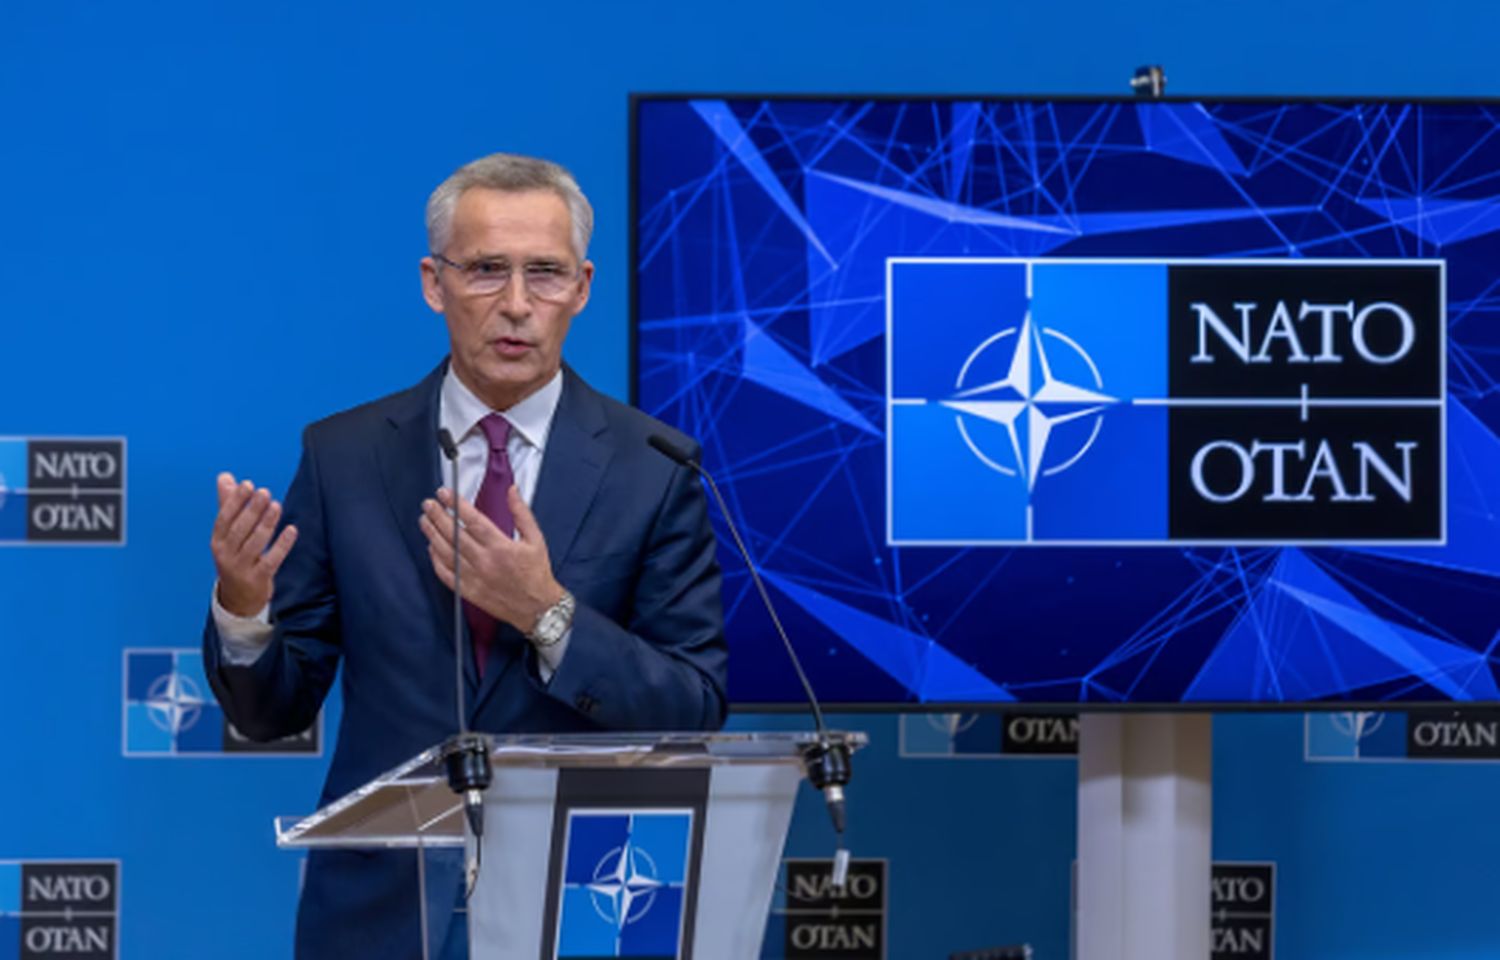 NATO, Jens Stoltenberg